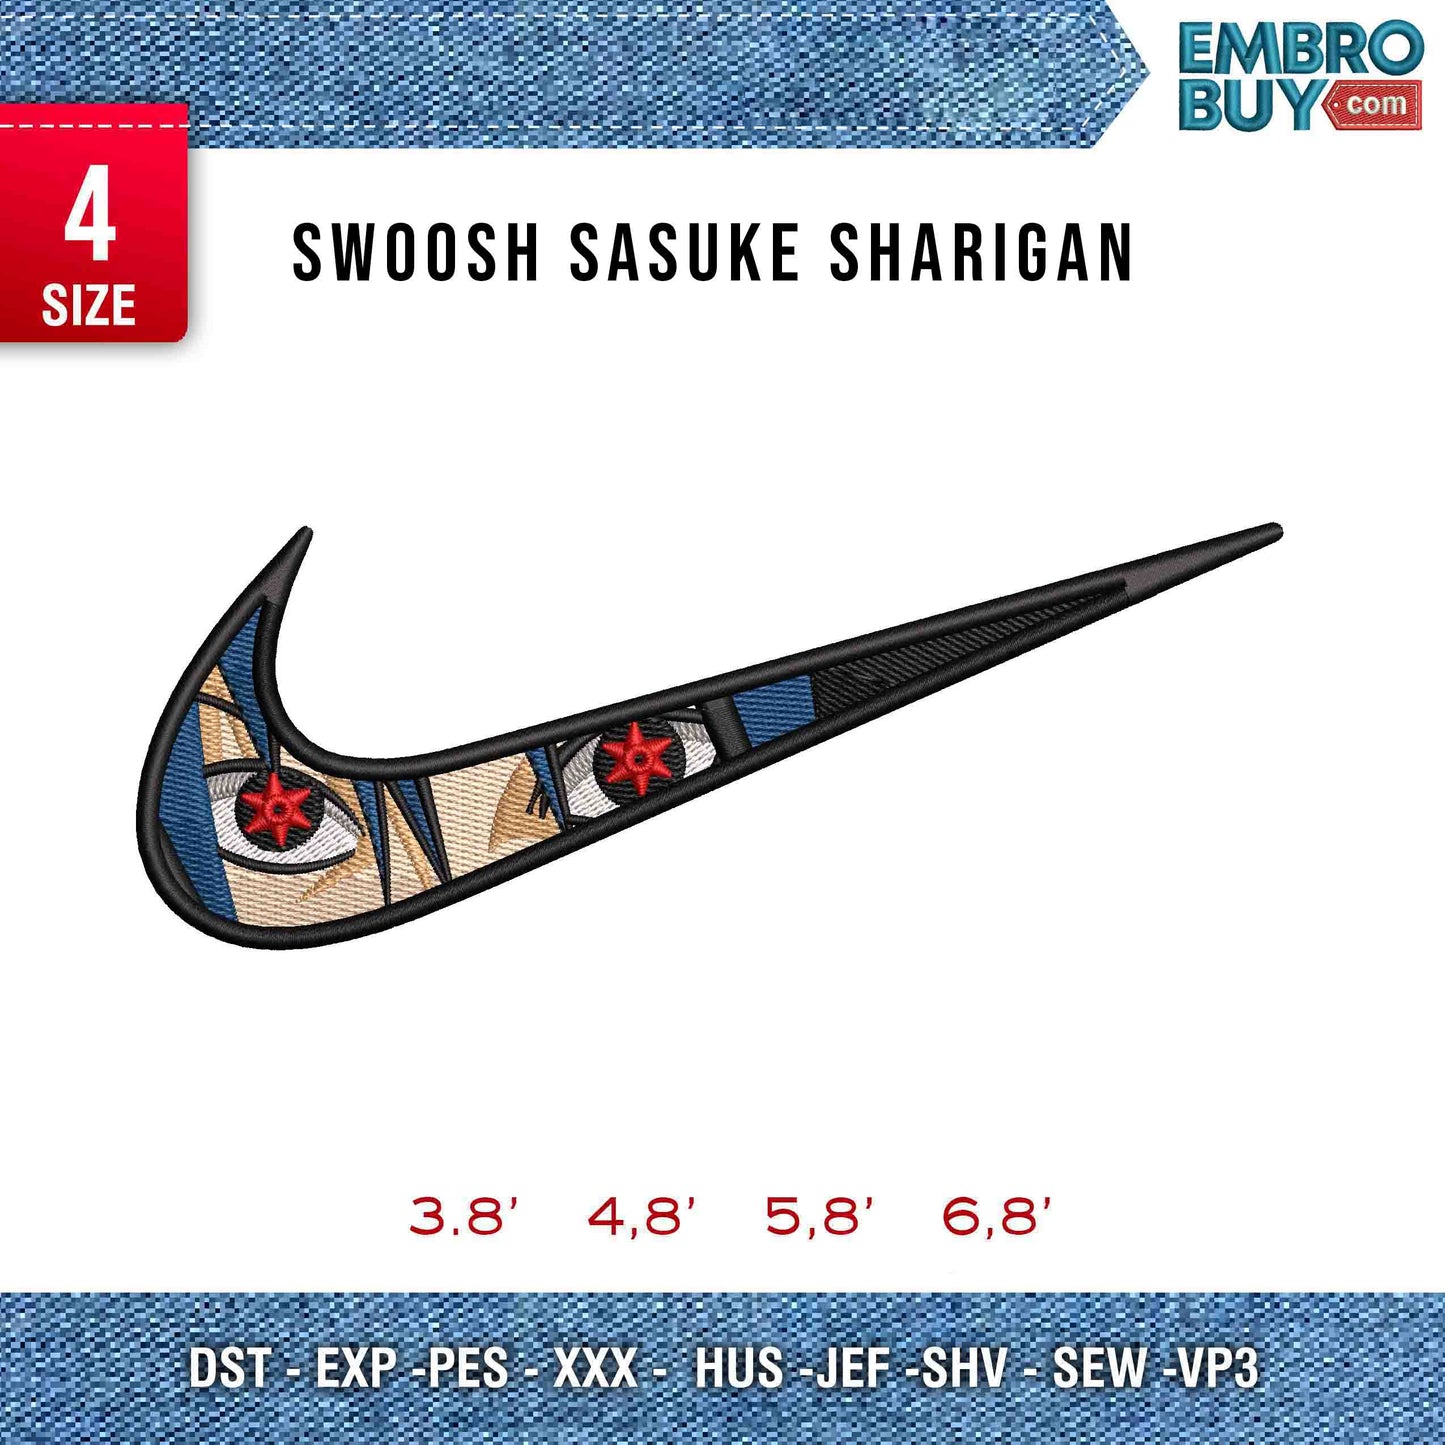 Swoosh Sasuke Sharigan